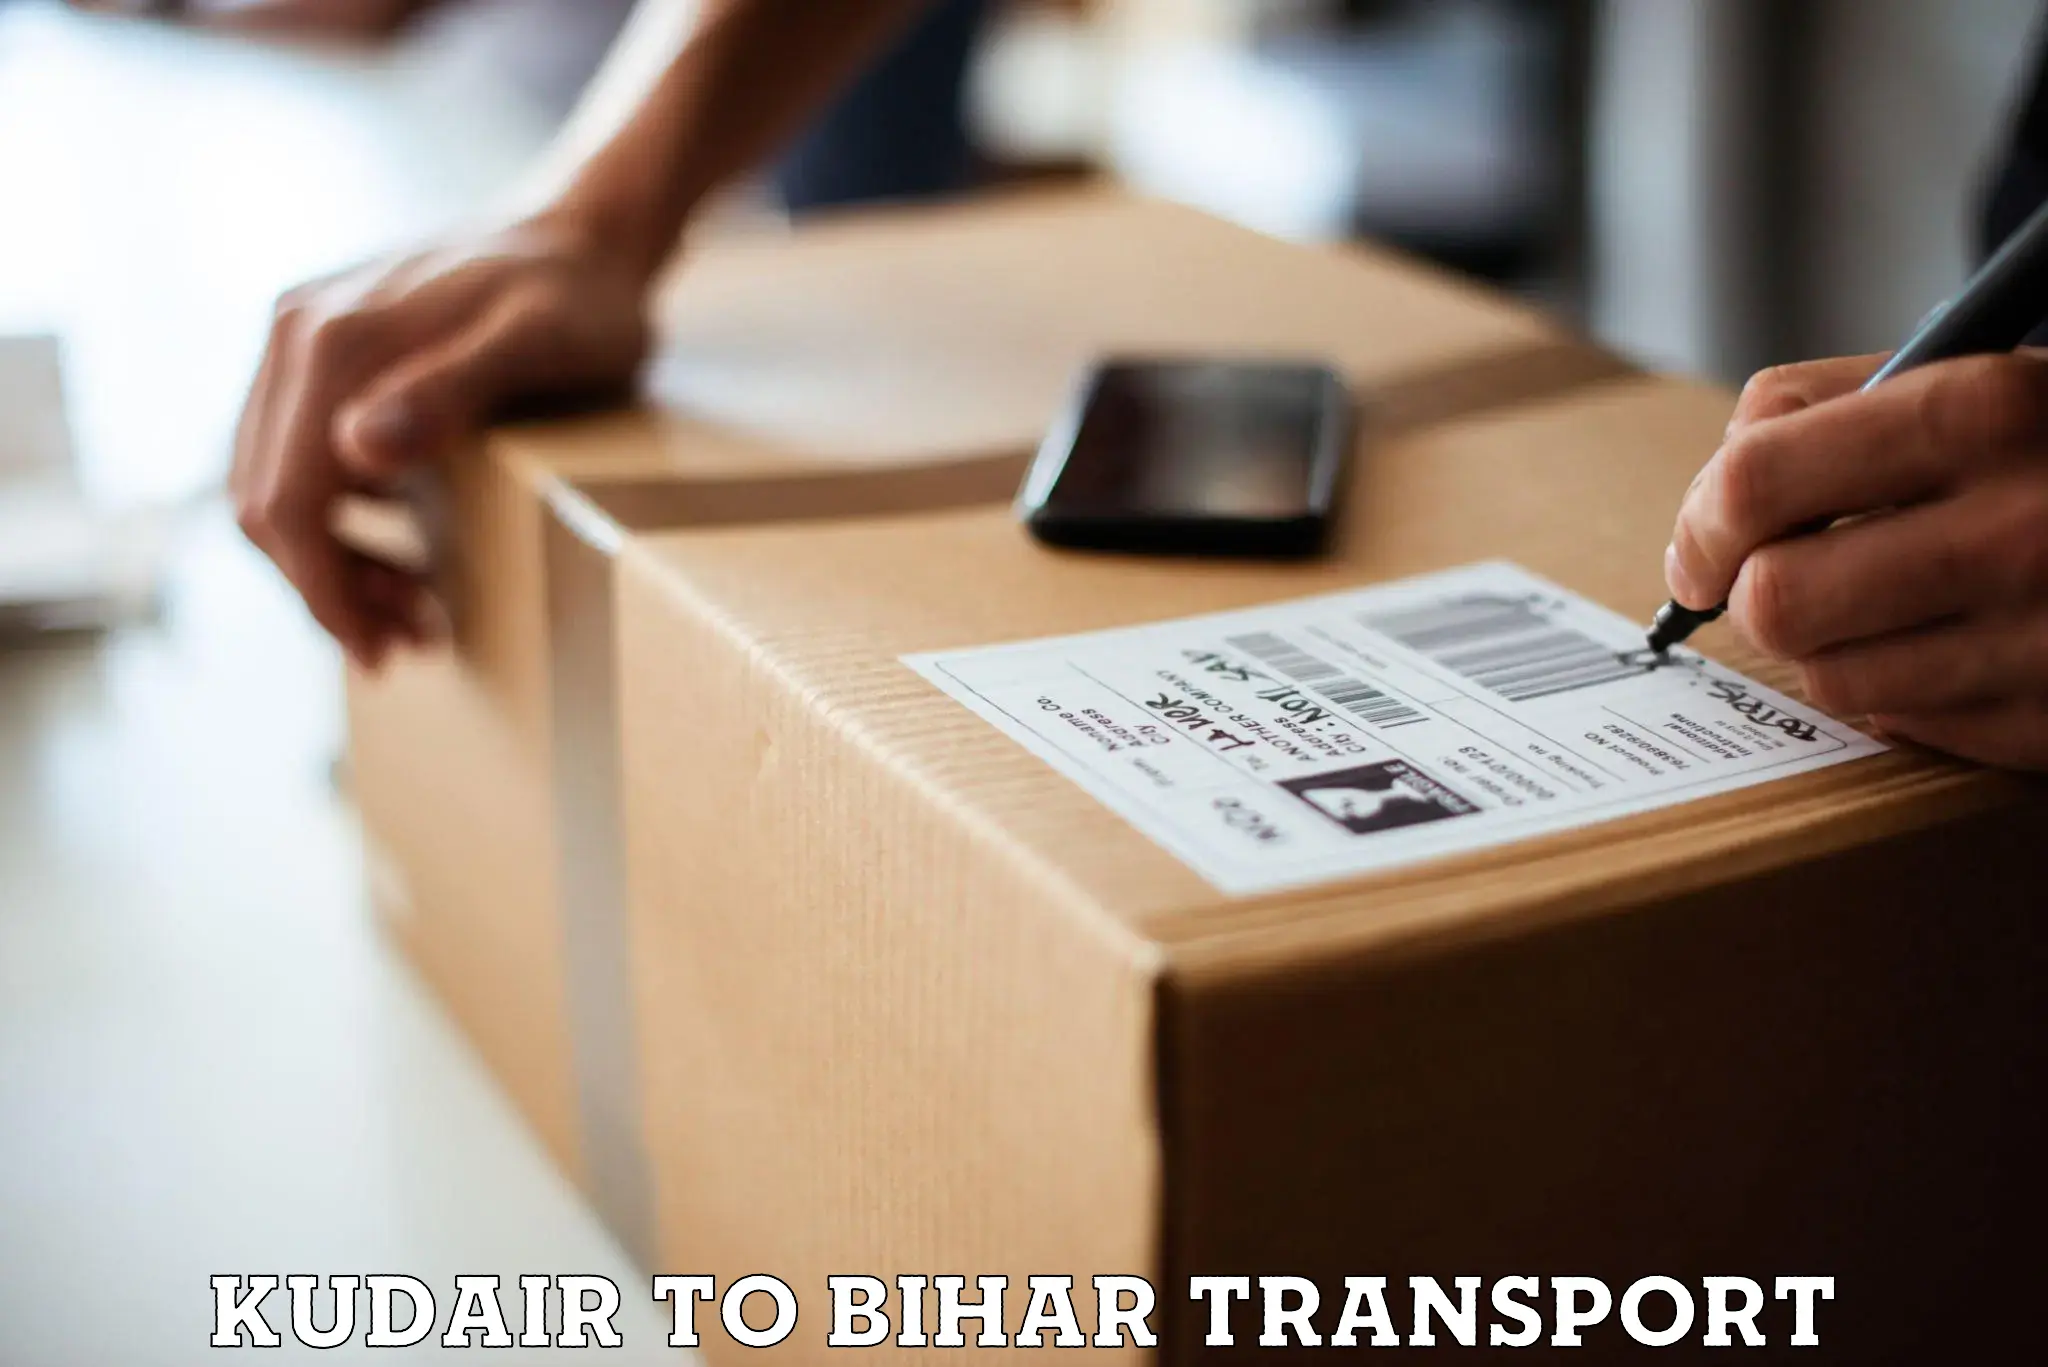 Interstate transport services Kudair to Bihar